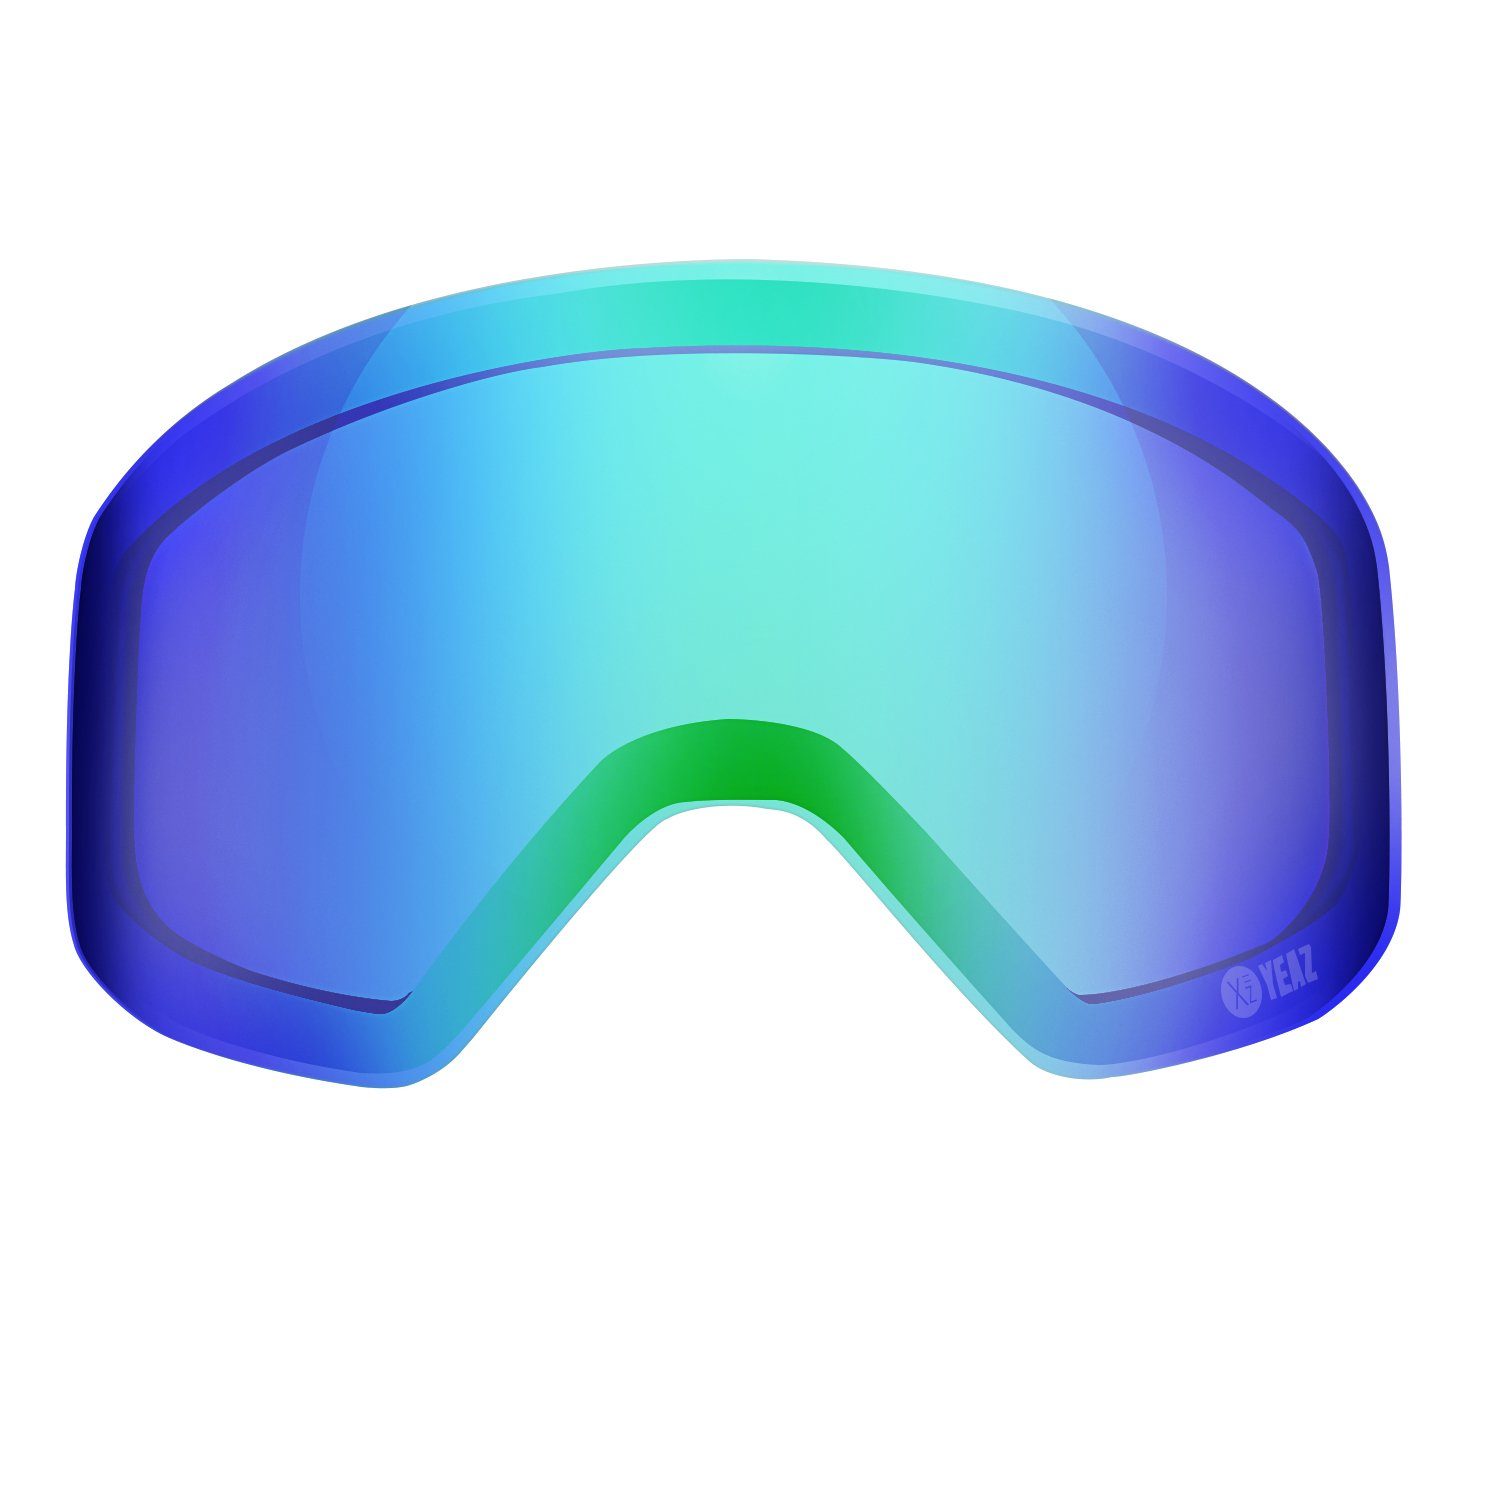 APEX verspiegelt grün Magnetisches YEAZ Skibrille wechselglas, magnetisches Wechselglas